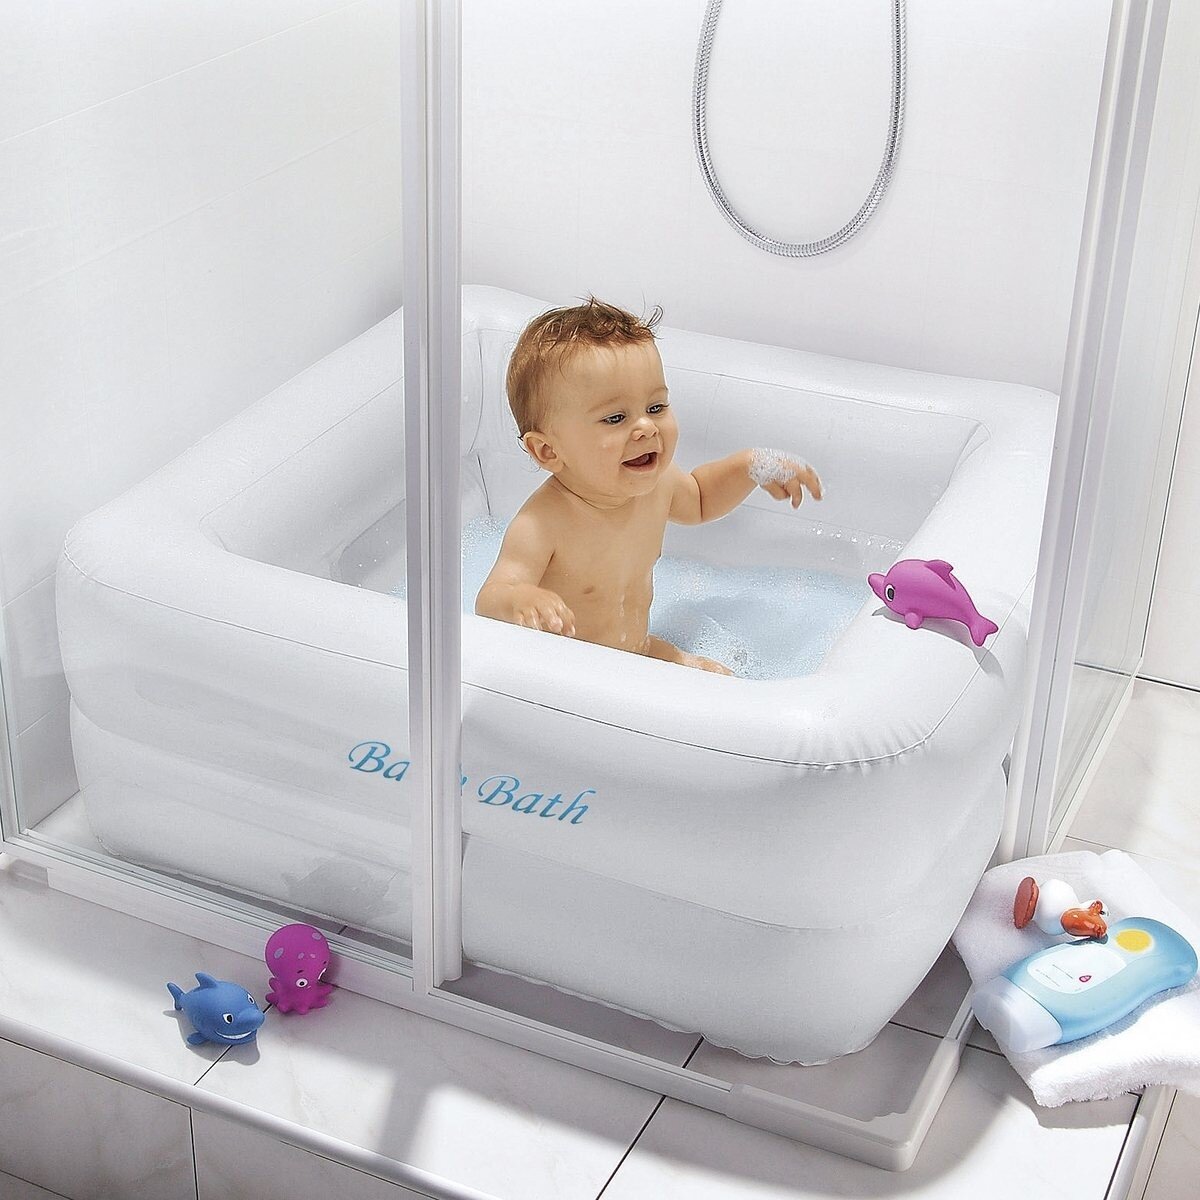 Душевая ванночка. Ванна для купания ребенка. Ванночка для новорожденных в душевую кабину. Детские ванночки в душевую кабину. Ванна для ребенка в душевую кабину.